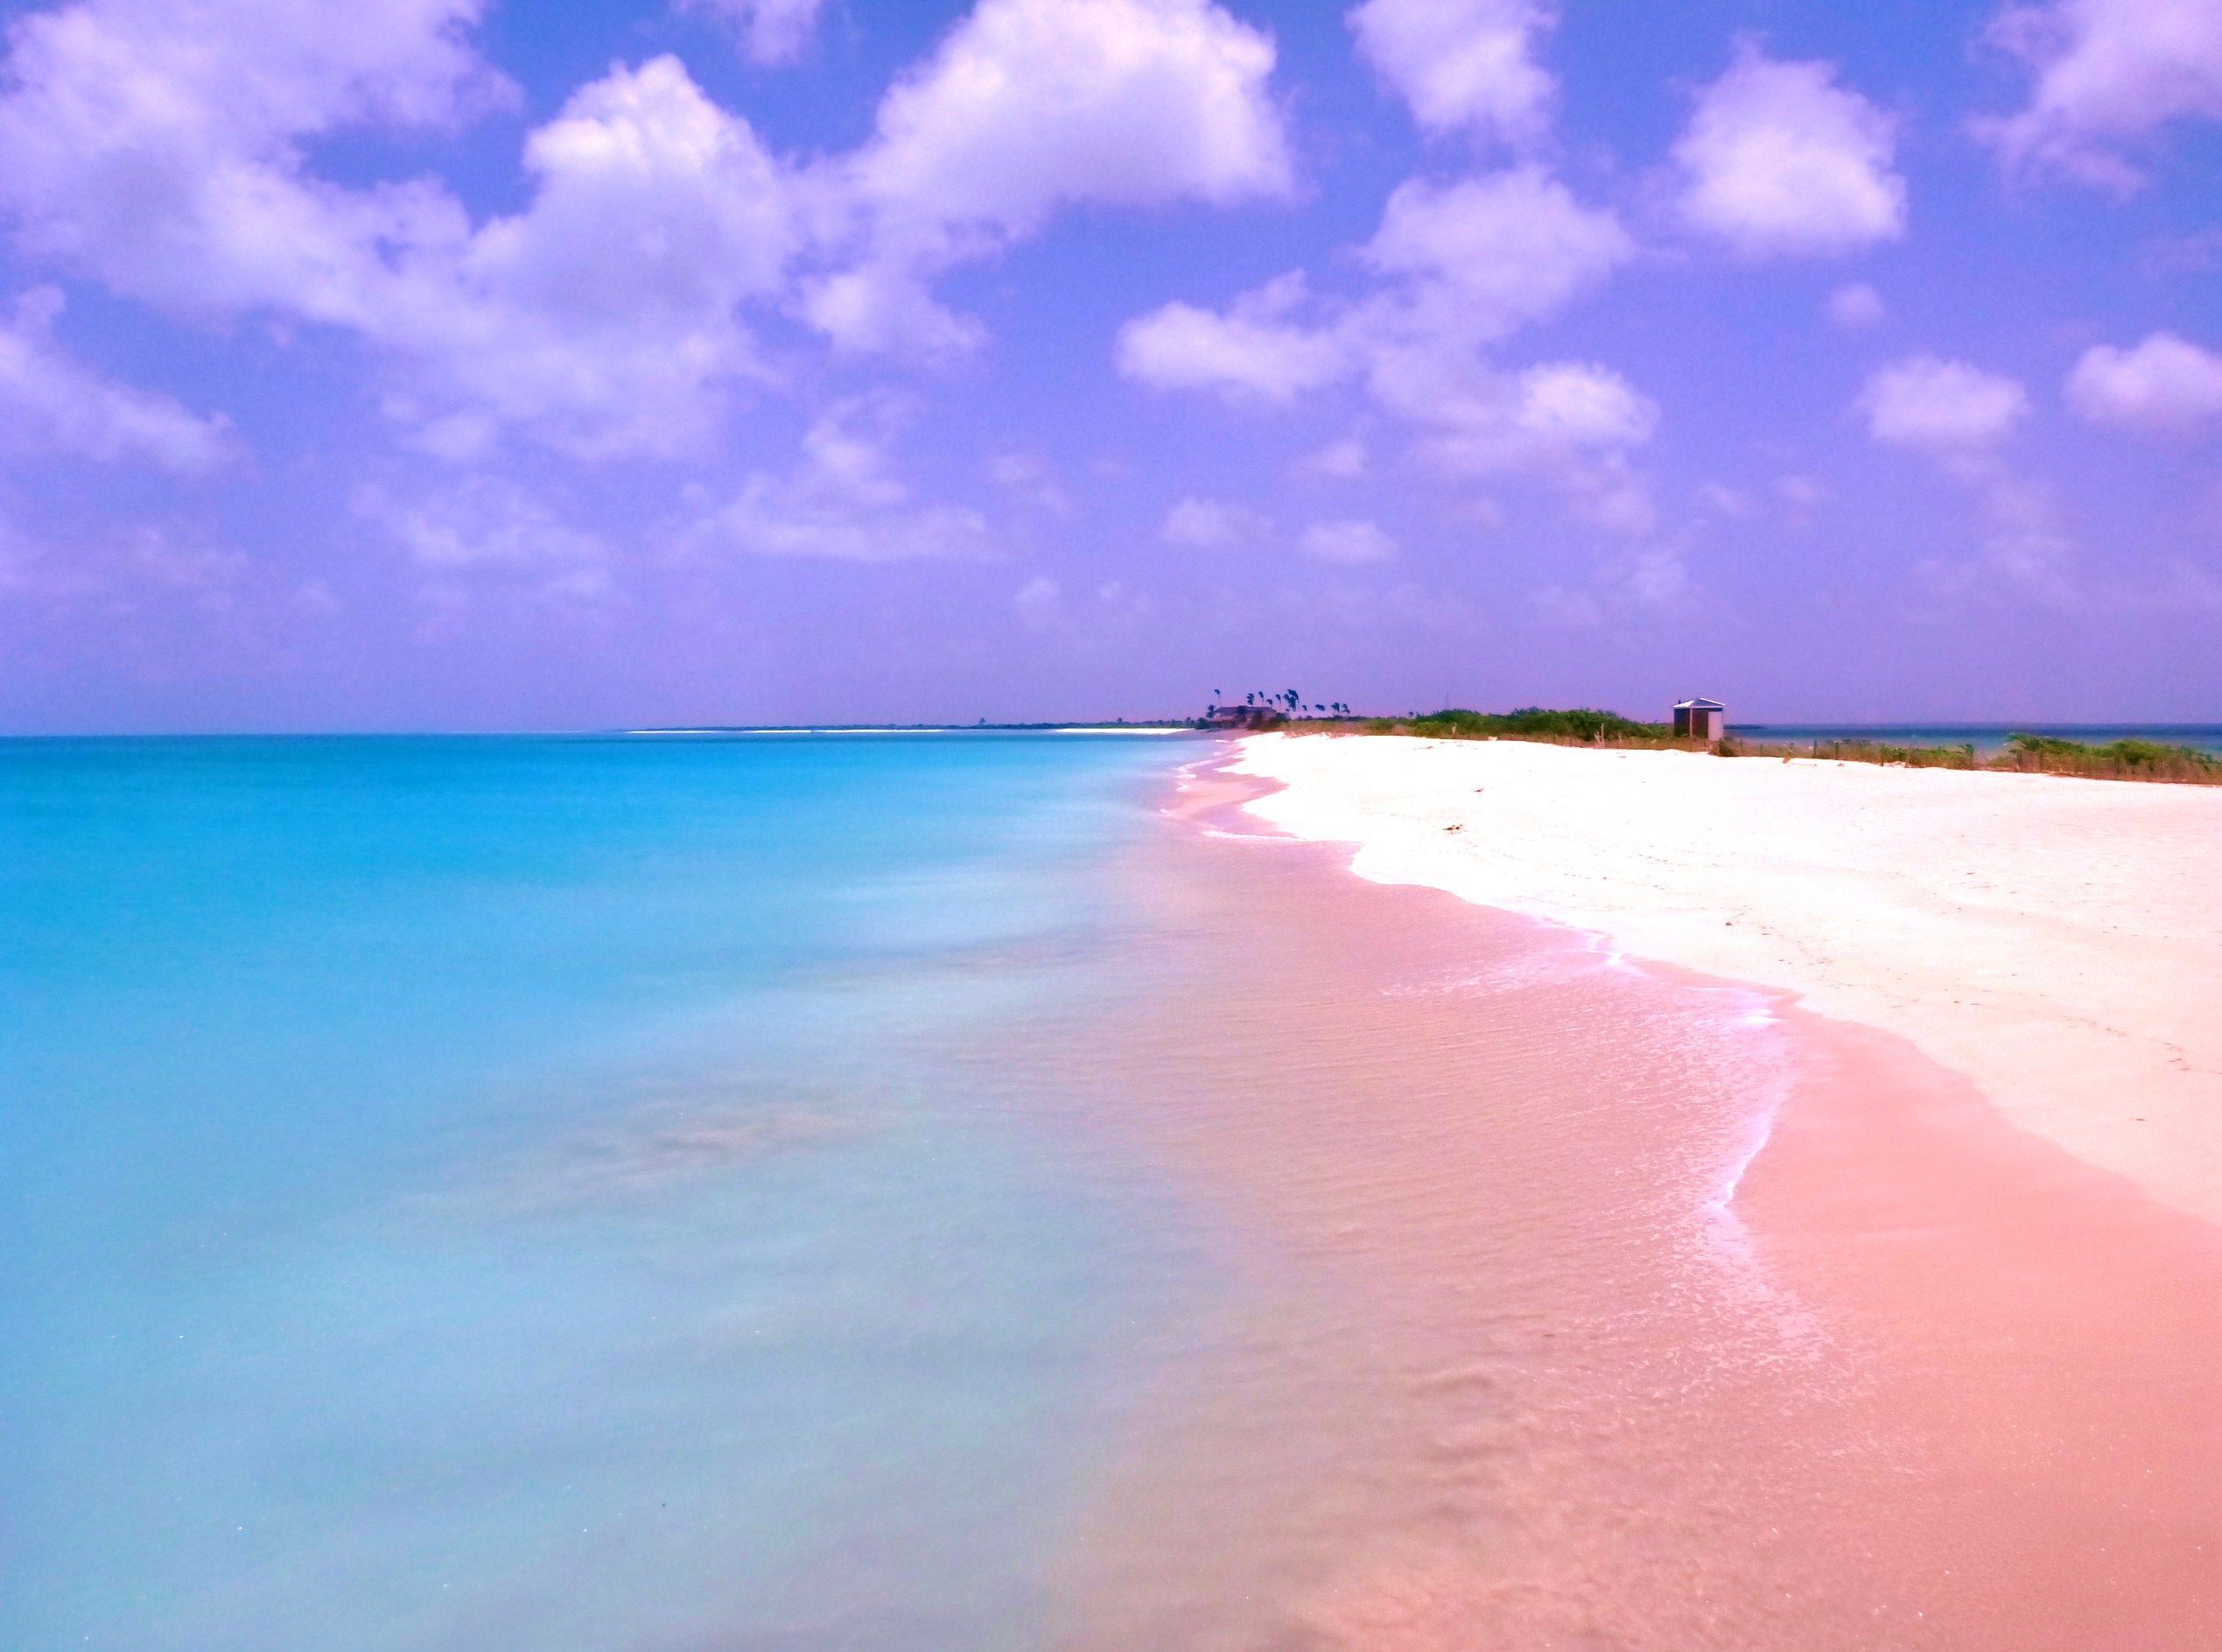 【携程攻略】巴哈马粉色沙滩景点,世界上唯一的粉色沙滩，美国地理杂志评为全球最性感沙滩，沙滩，海水…